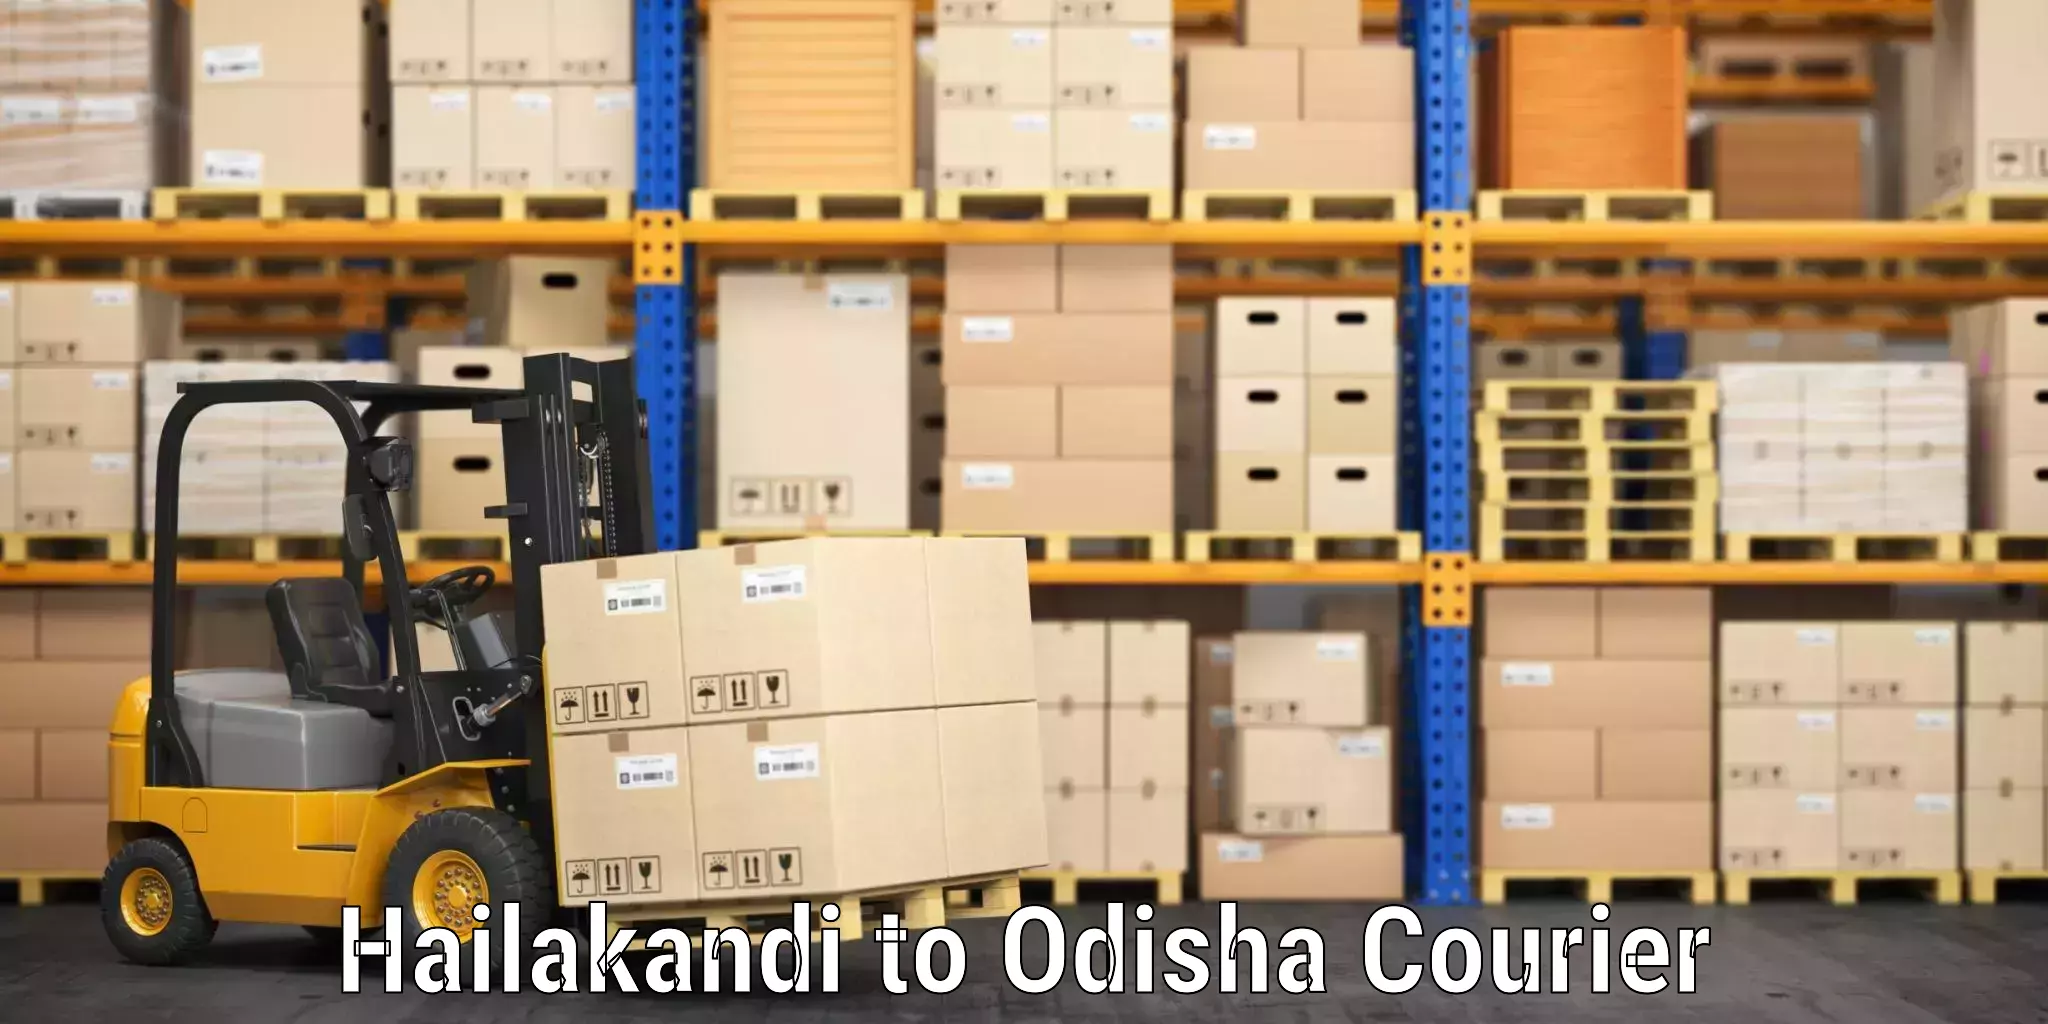 Luggage delivery network Hailakandi to Karanjia